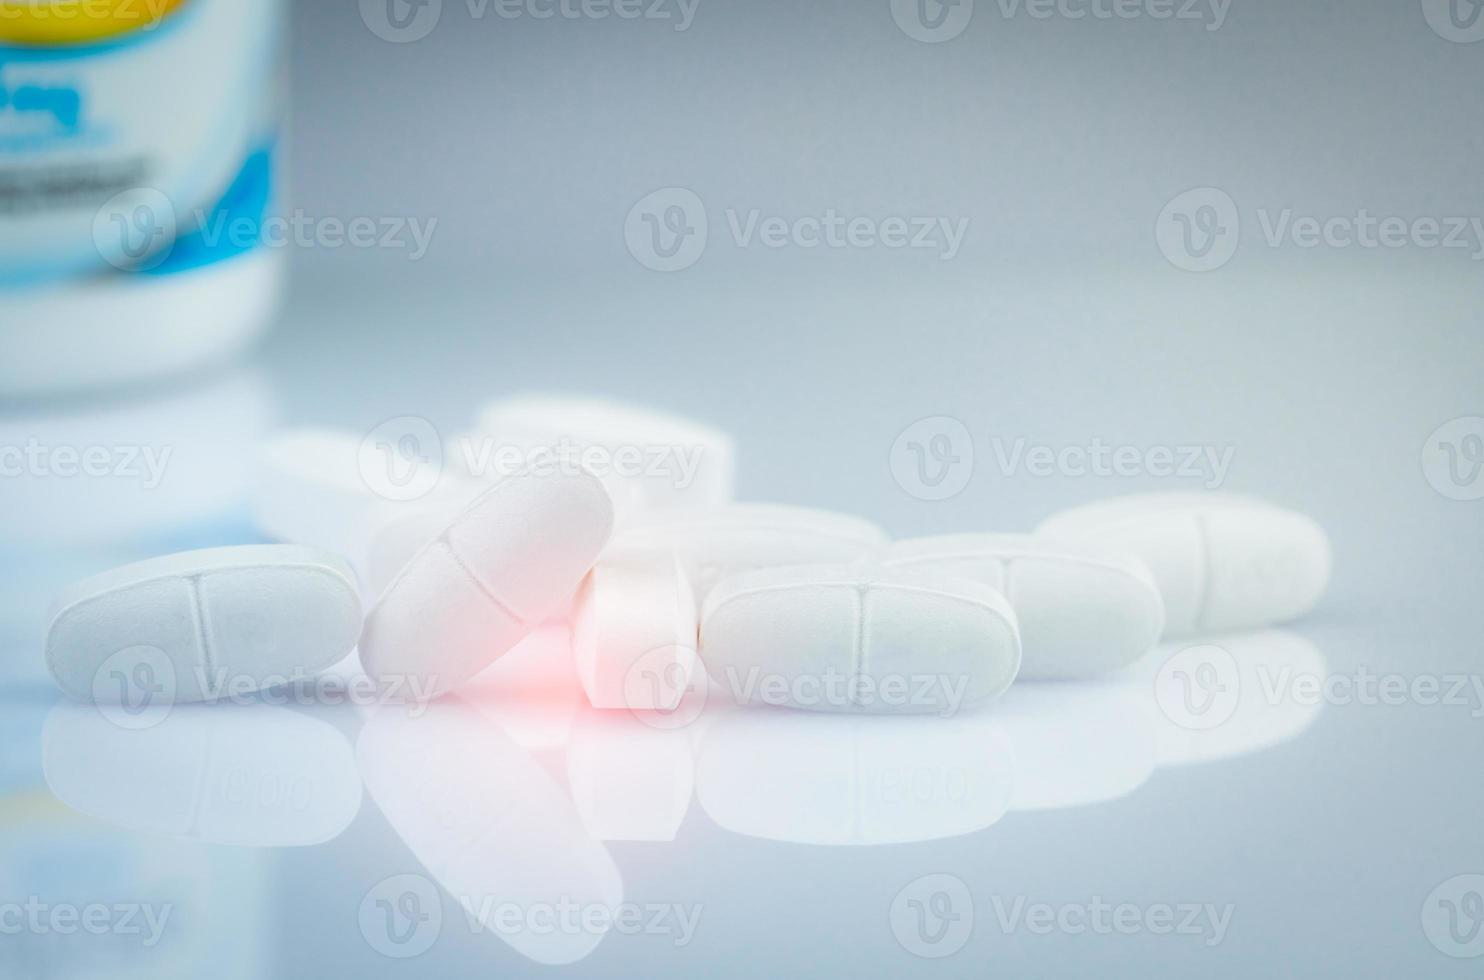 calciumtabletten voor kinderen of zwangere vrouwen. witte tabletten pillen op de wazige achtergrond van de medicijnfles. vitamines en supplement concept. farmaceutische industrie. apotheek producten. wereldwijde gezondheidszorg. foto